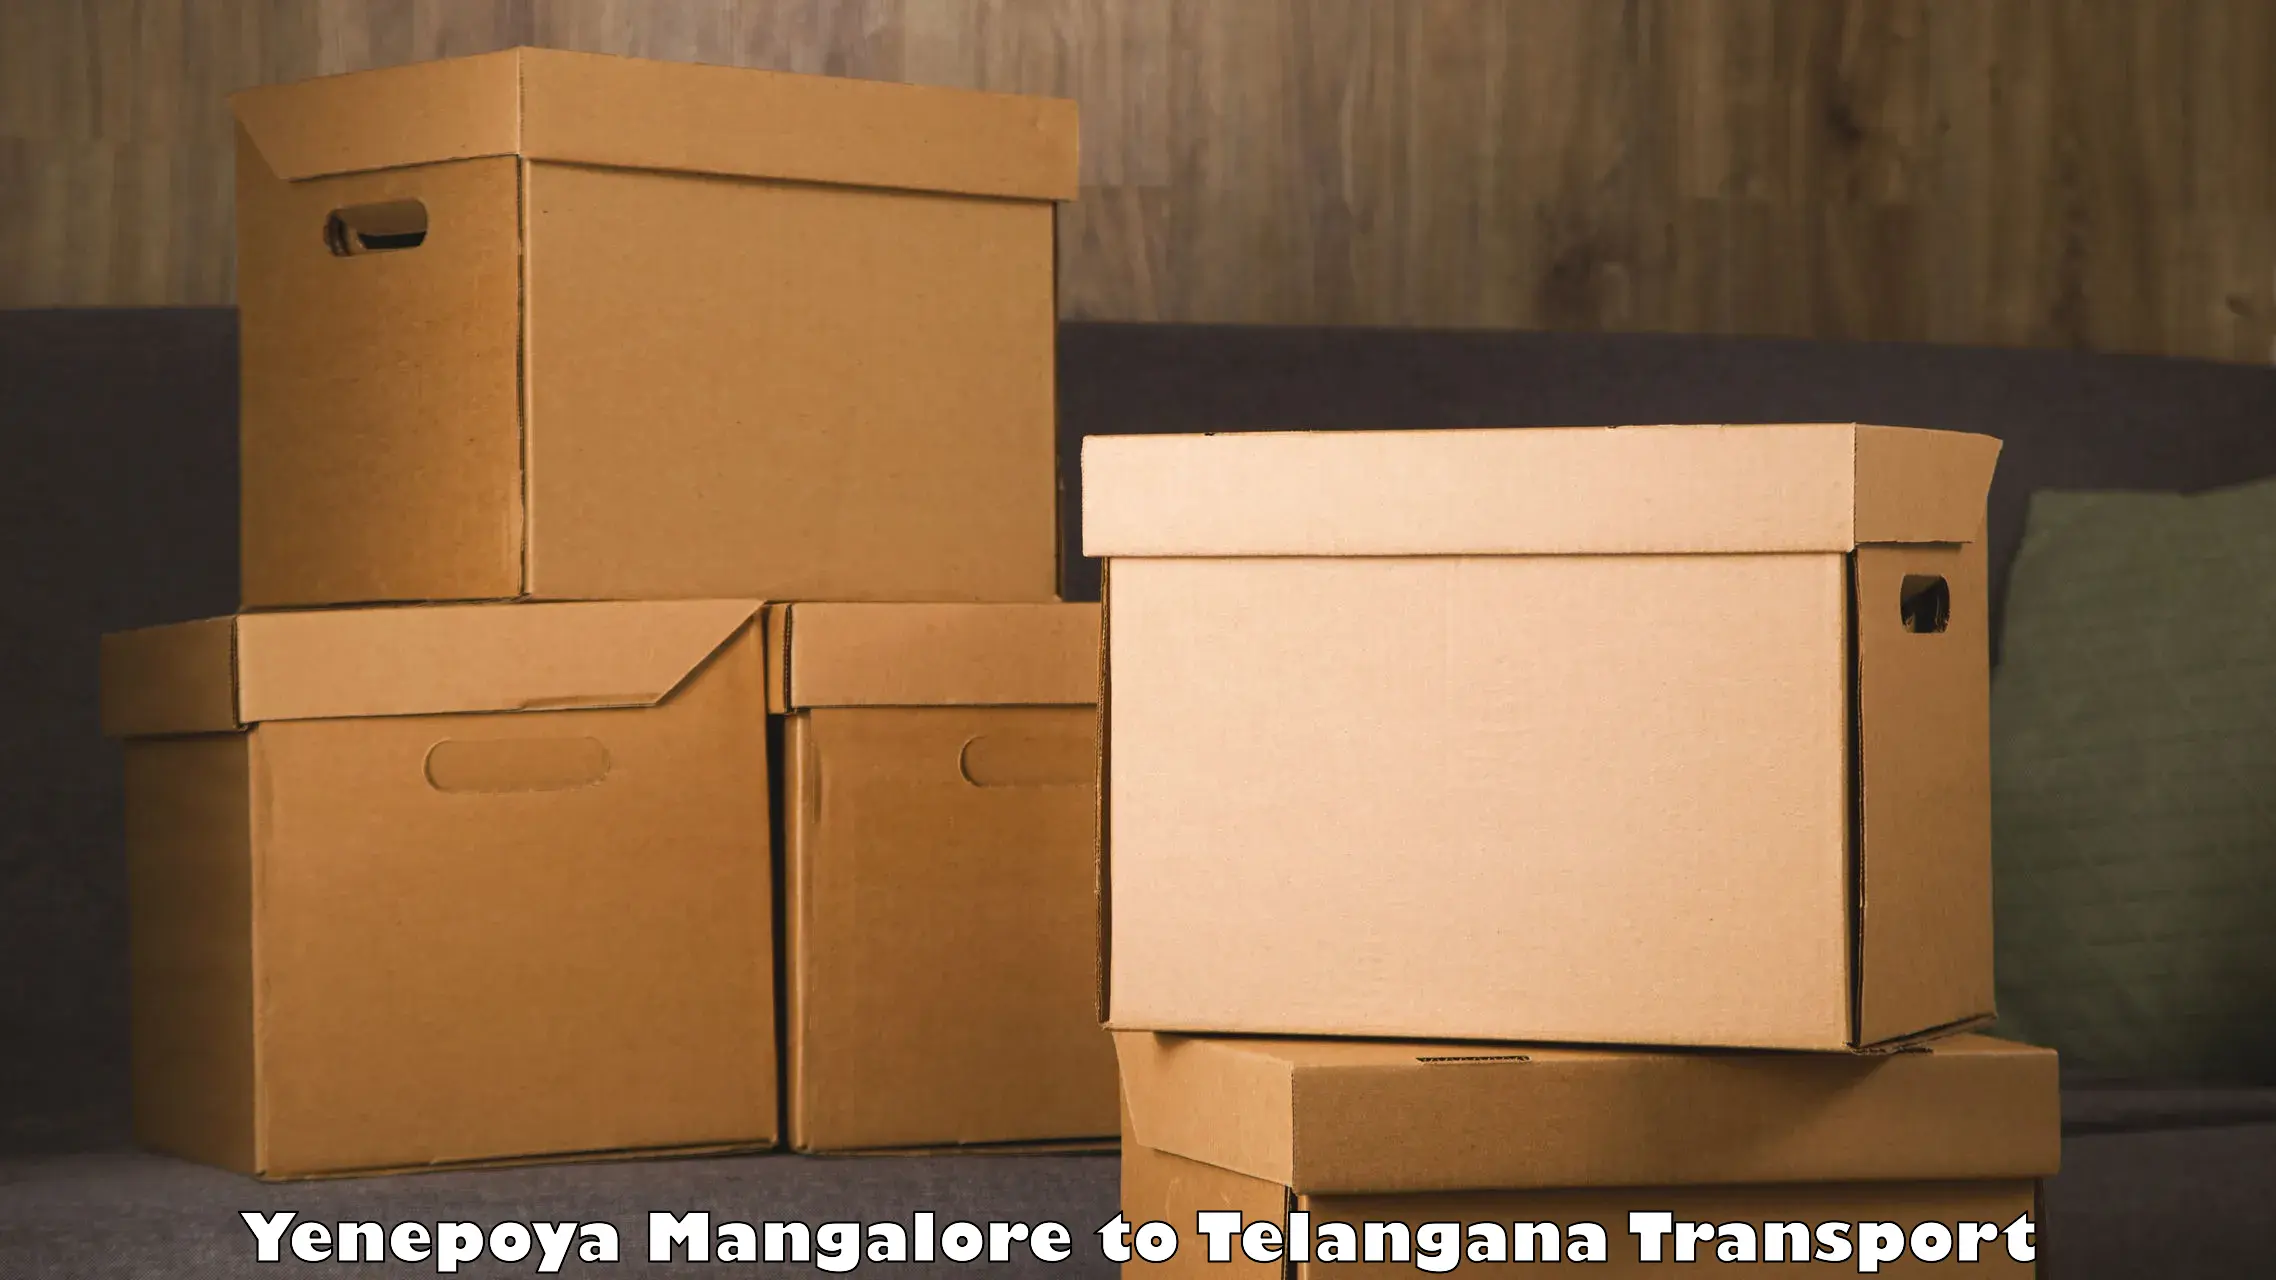 Transport shared services in Yenepoya Mangalore to Kusumanchi